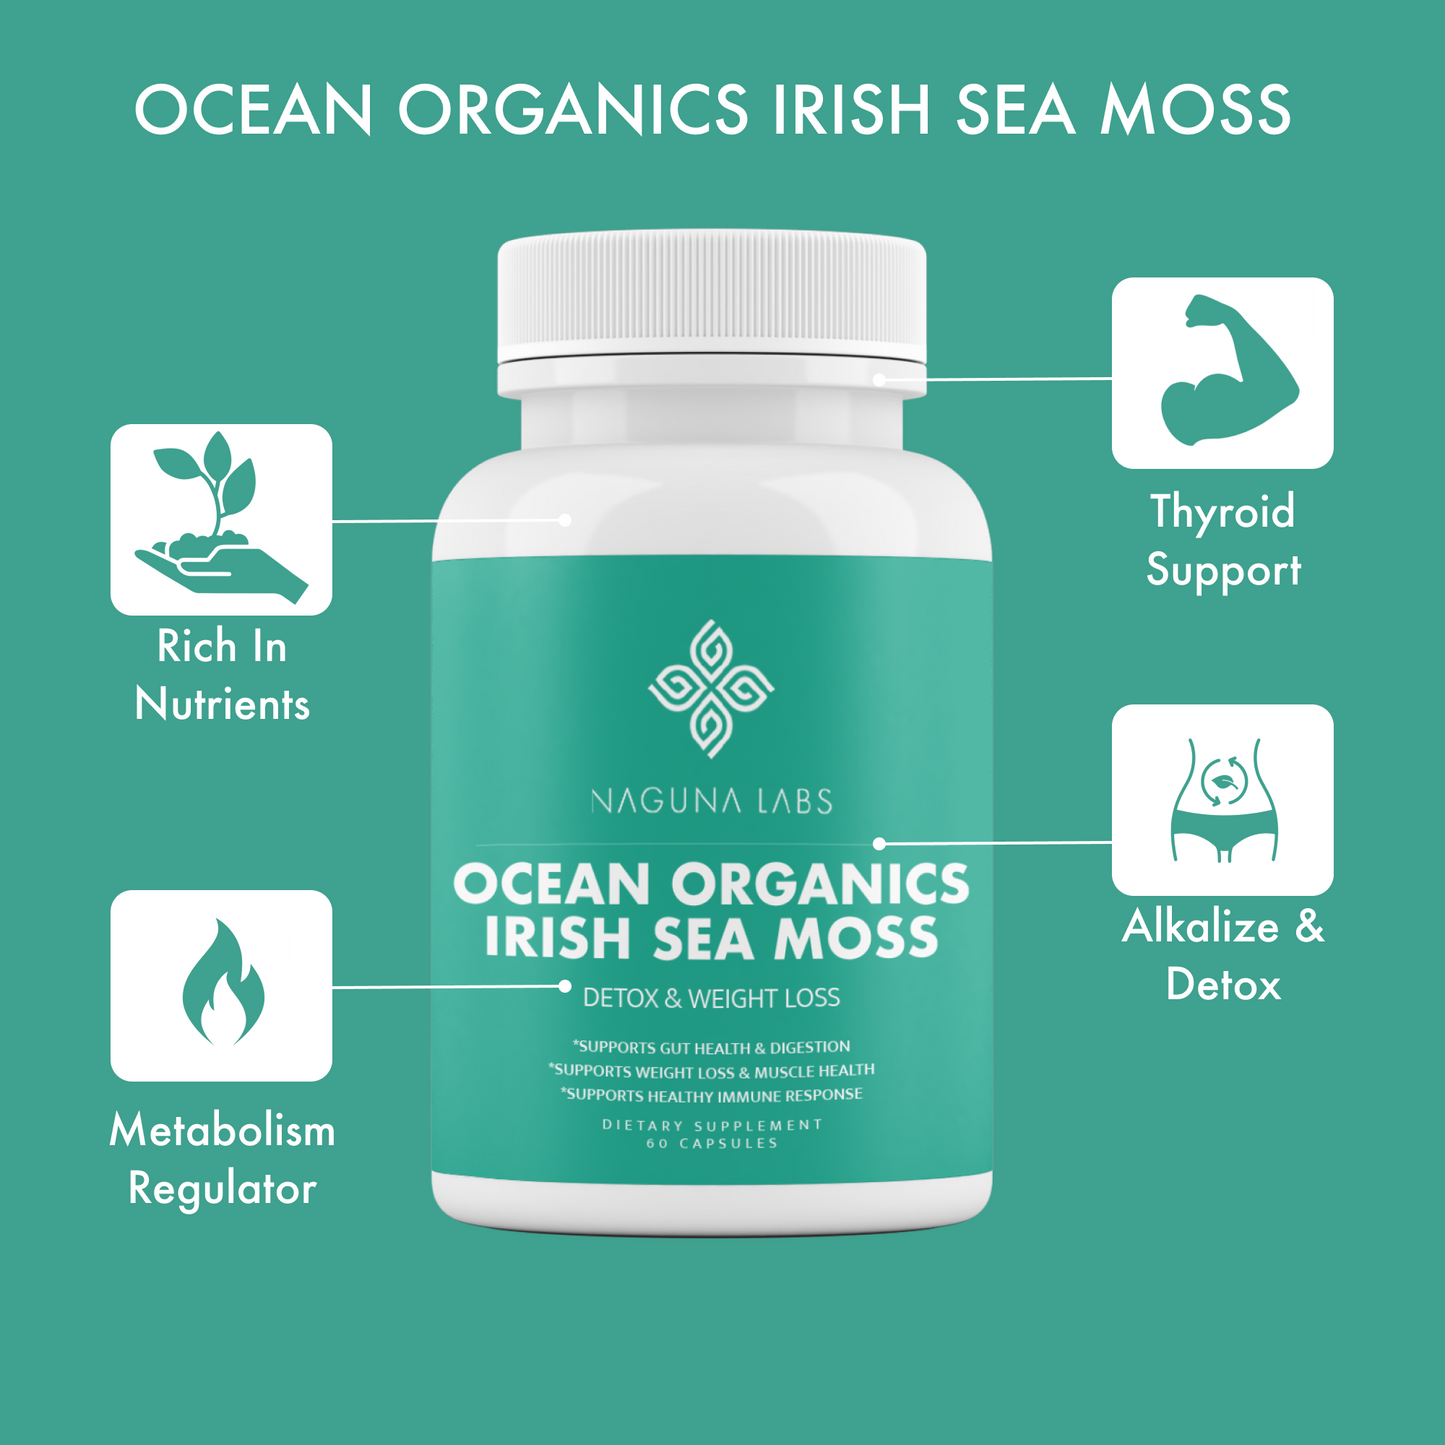 OCEAN ORGANICS IRISH SEA MOSS